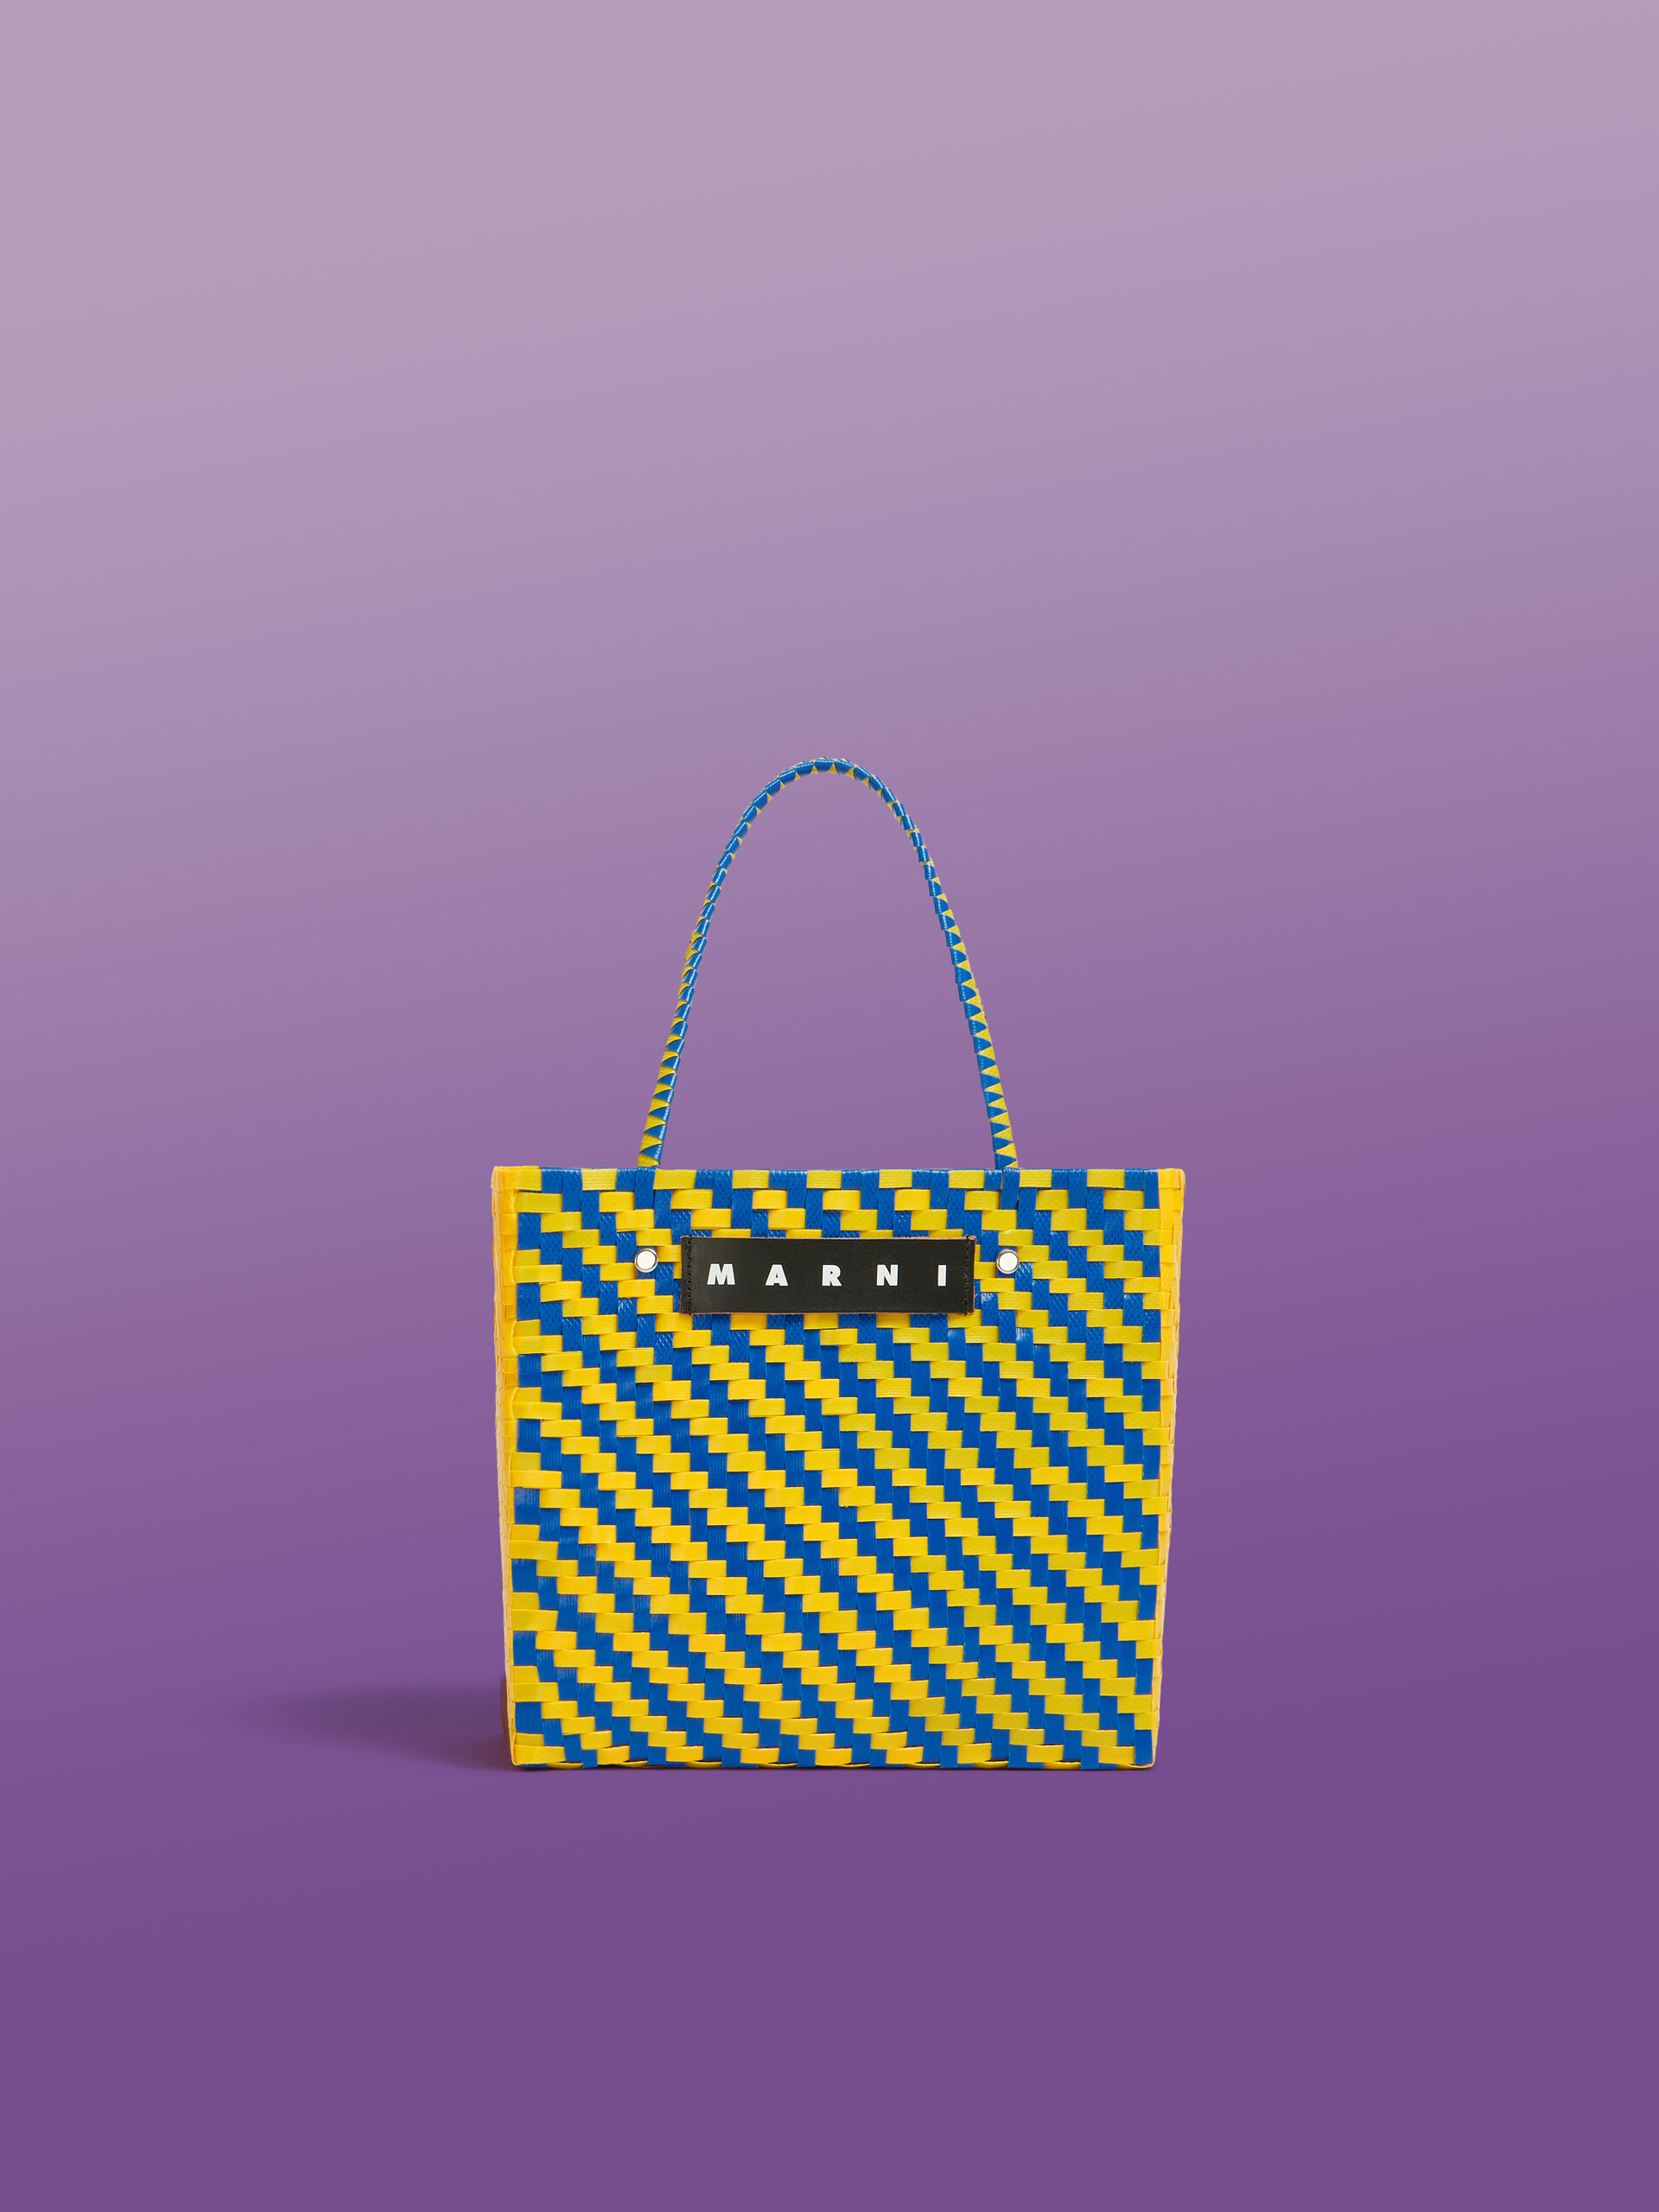 Minibolso MARNI MARKET BASKET con zigzag azul y amarillo - Bolsos shopper - Image 1